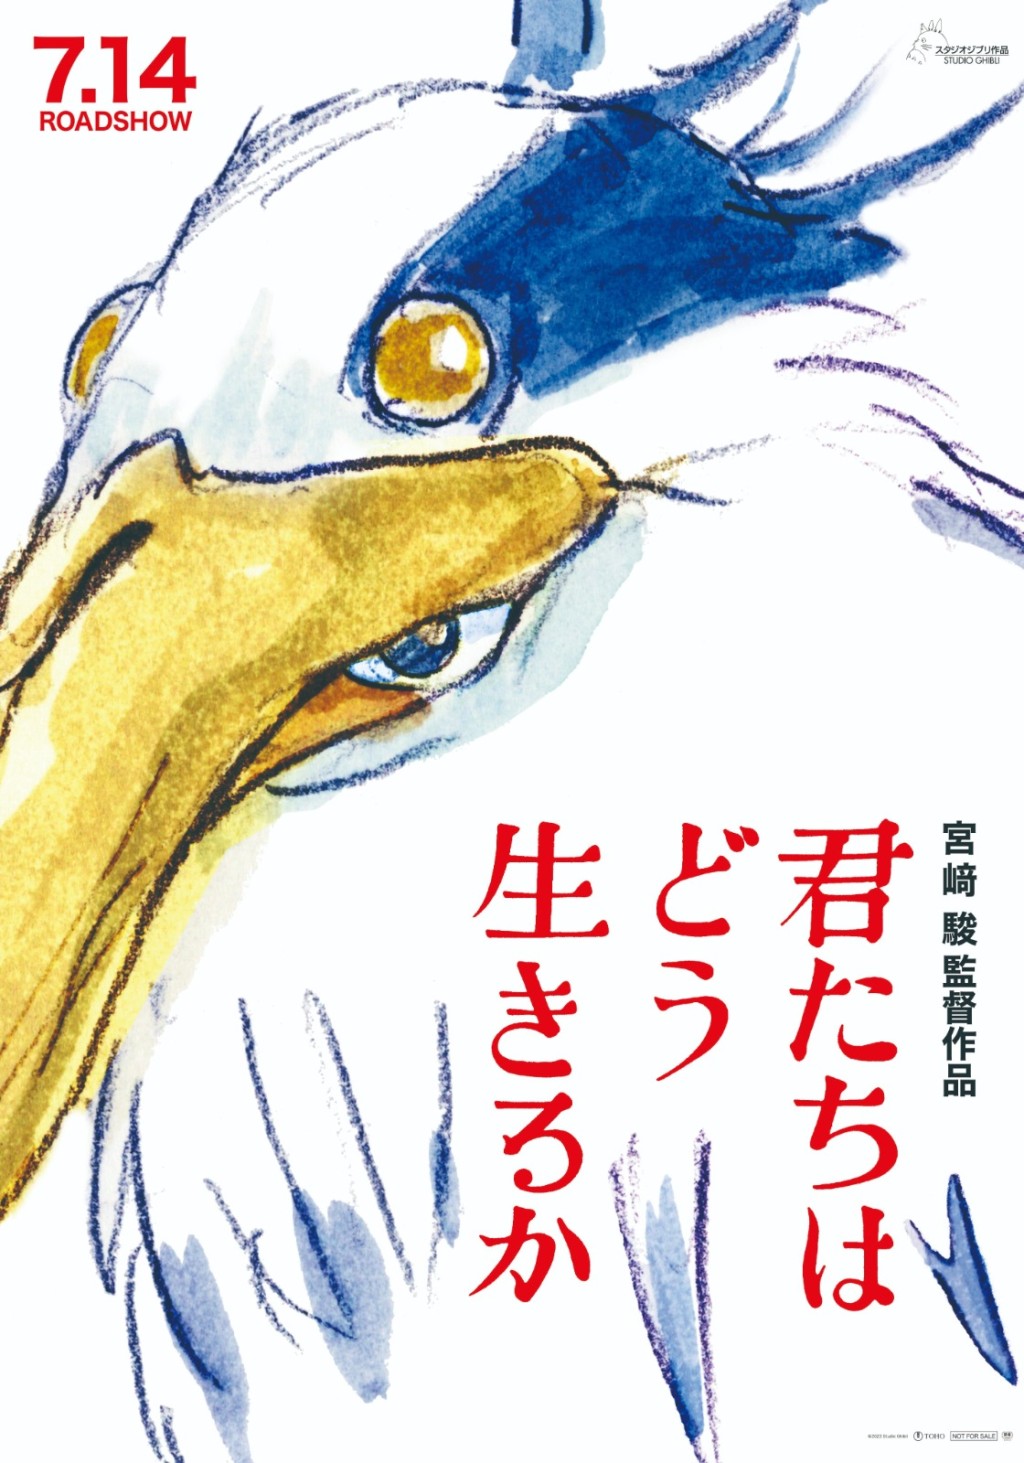 宫崎骏作品《苍鹭与少年》则获封最佳动画。